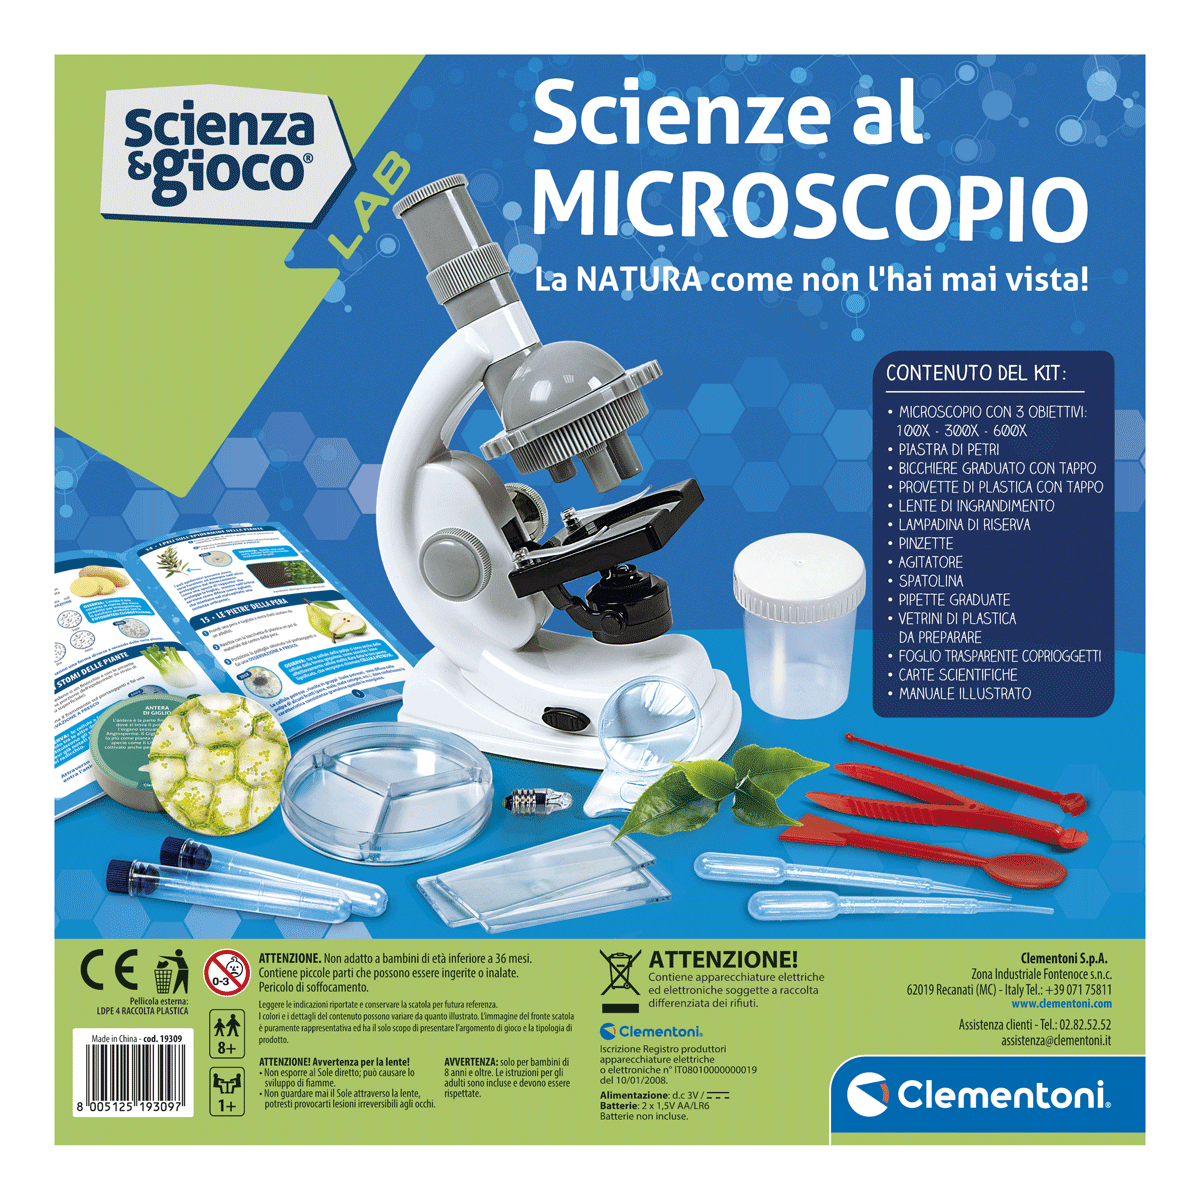 Clementoni - scienza e gioco lab - scienze al microscopio - Scienza e Gioco